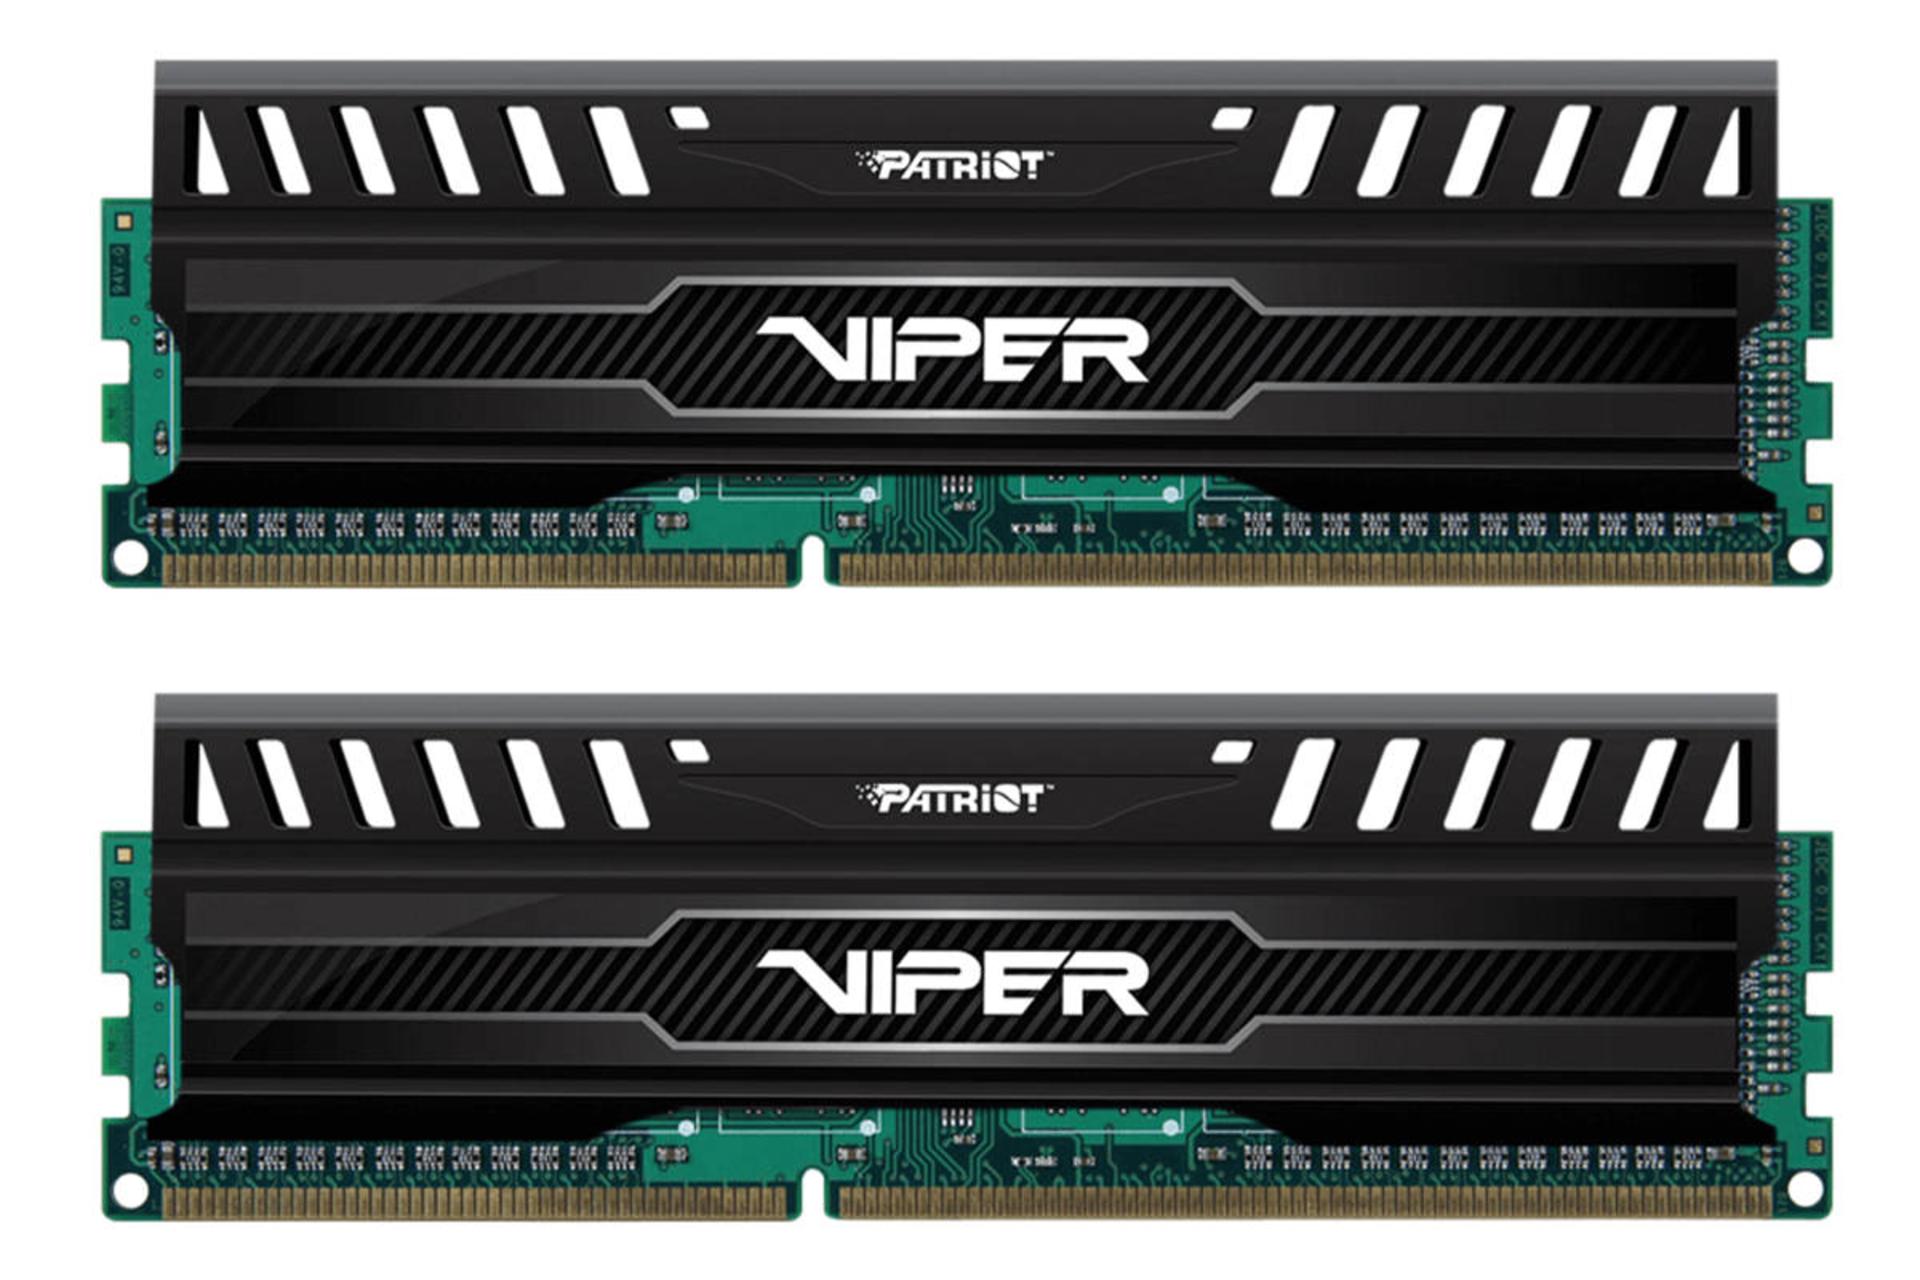 حافظه رم پاتریوت Viper 3 ظرفیت 8 گیگابایت (2x4) از نوع DDR3-1600